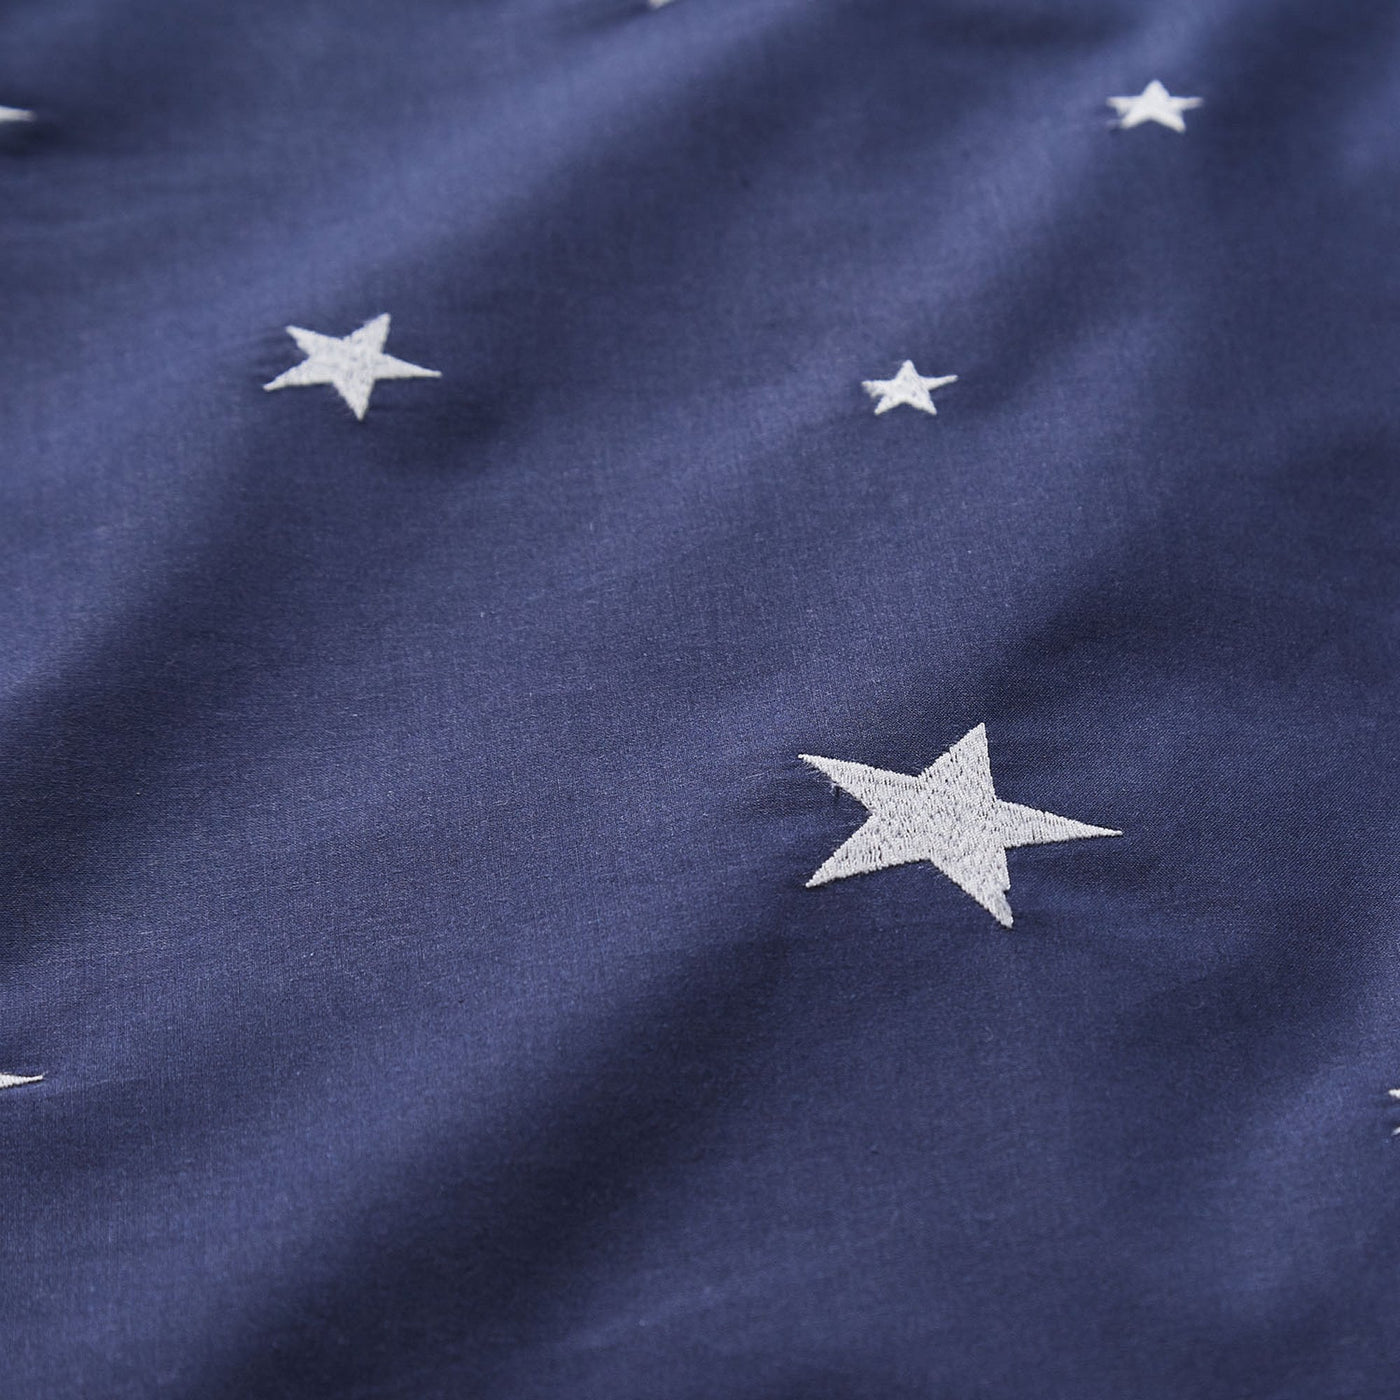 Scattered Stars Navy Blue Organic Cotton Bed Linen, Duvet Cover, Pillowcase